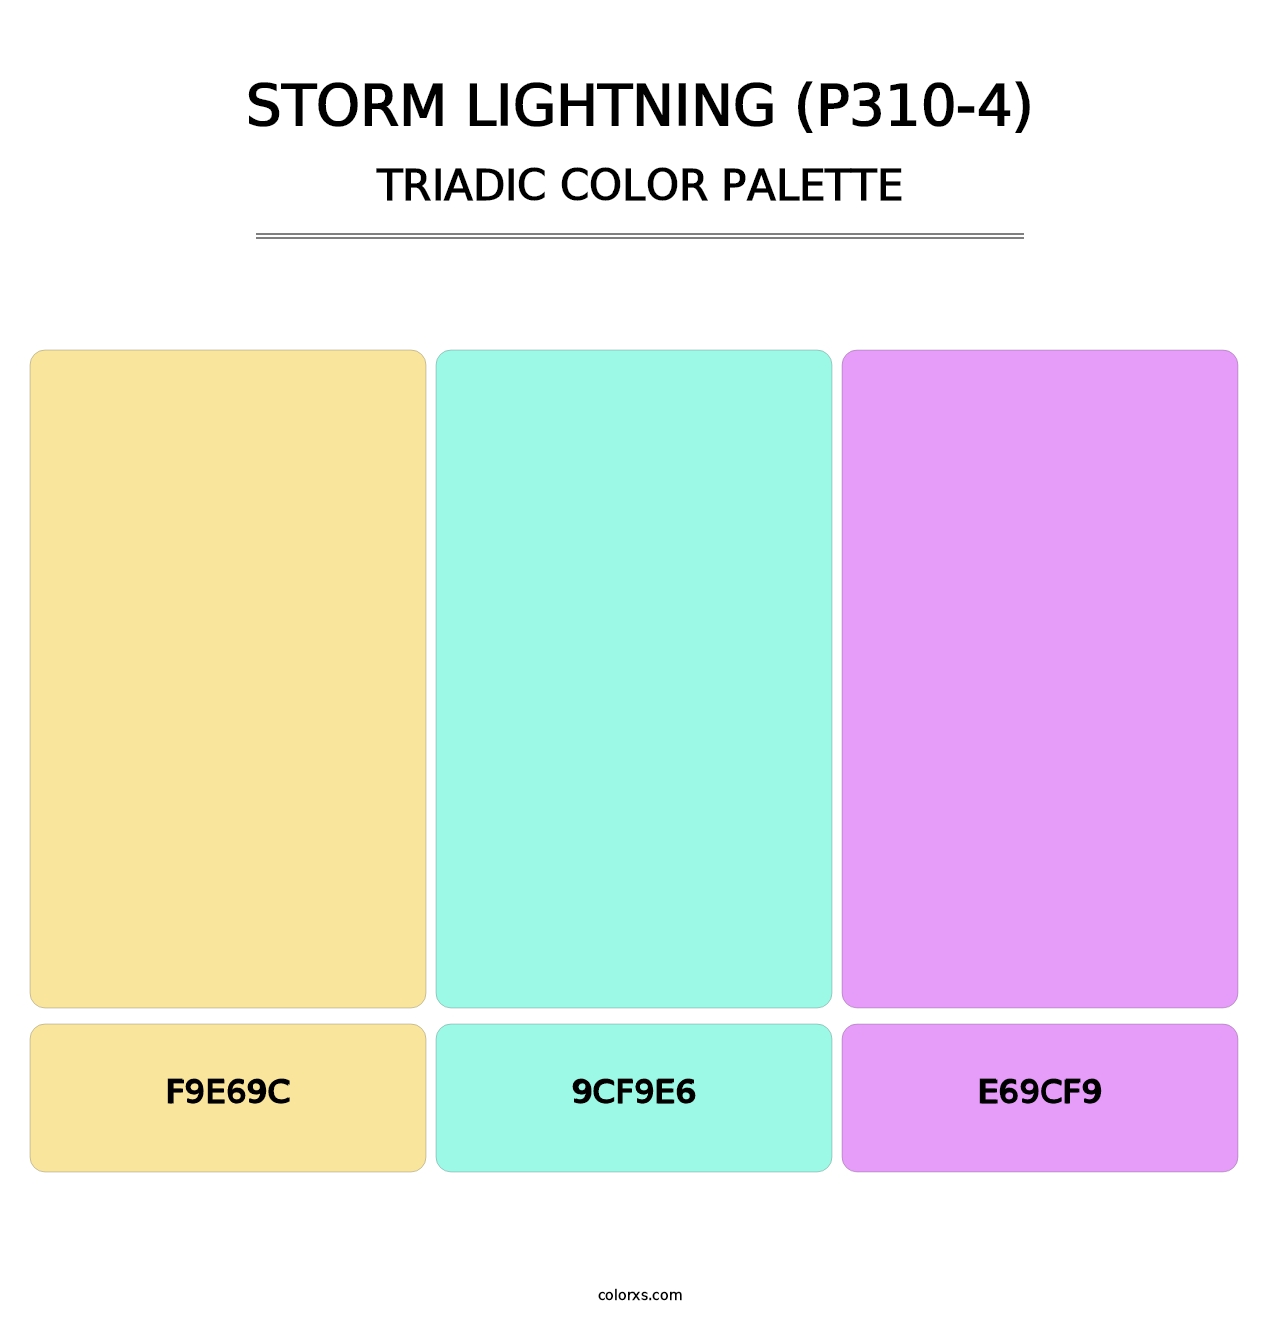 Storm Lightning (P310-4) - Triadic Color Palette